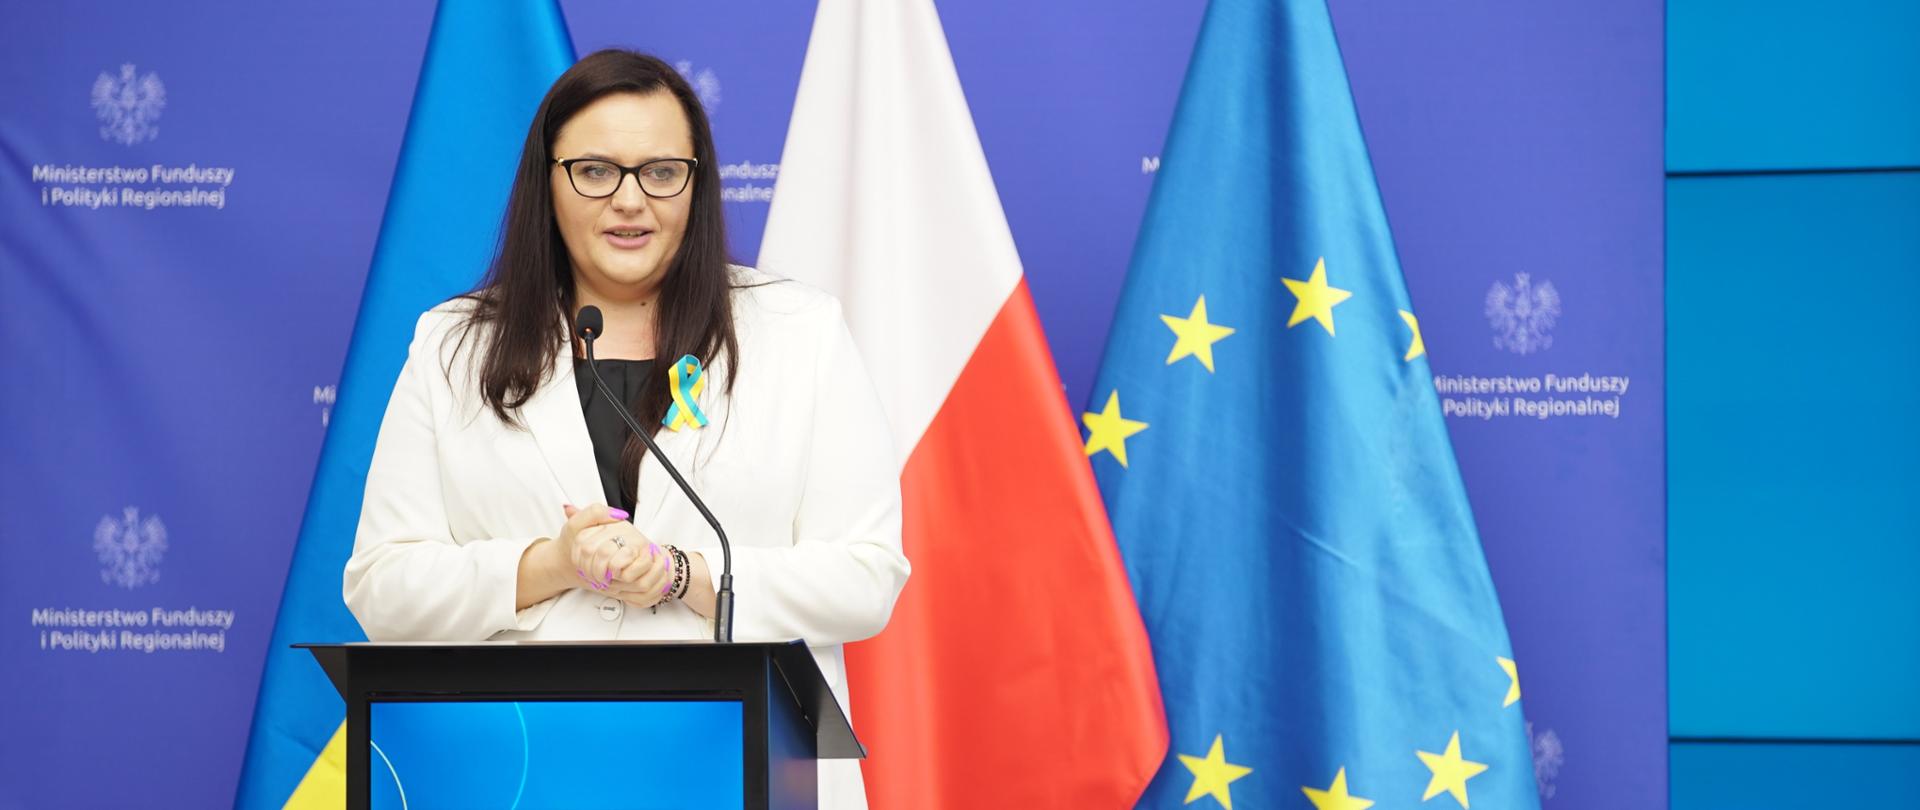 Wiceminister Małgorzata Jarosińska-Jedynak w sali konferencyjnej w mównicy. Za nią flago UA, PL i UE.